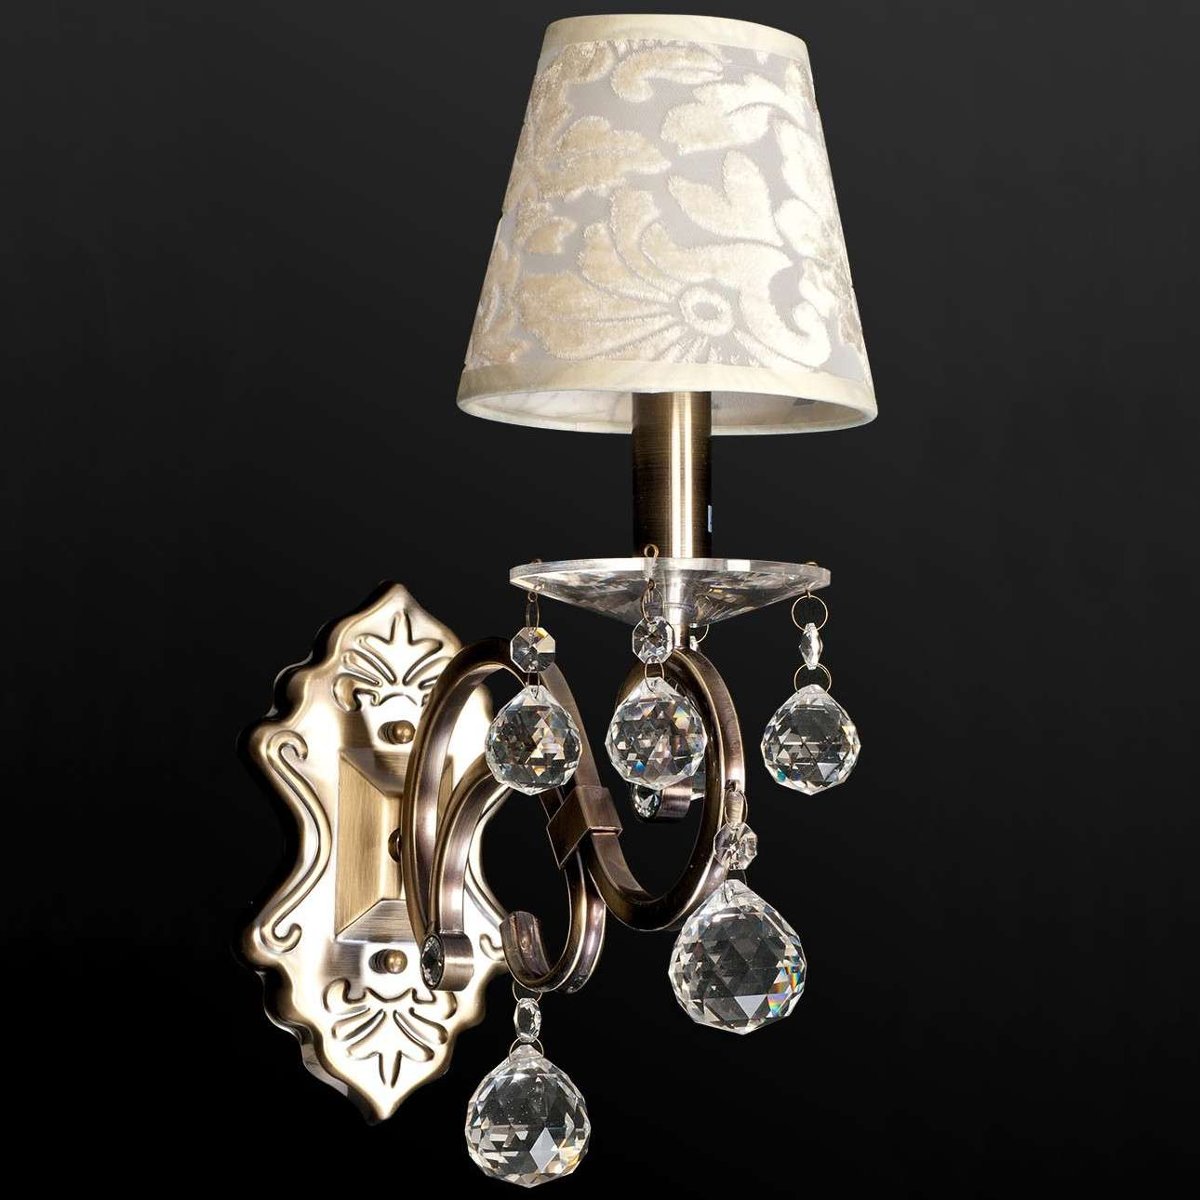 Inne Kinkiet LAMPA ścienna VEN K-BH 12075/1 klasyczna OPRAWA abażurowa z kryształkami wzory crystal patyna kremowa